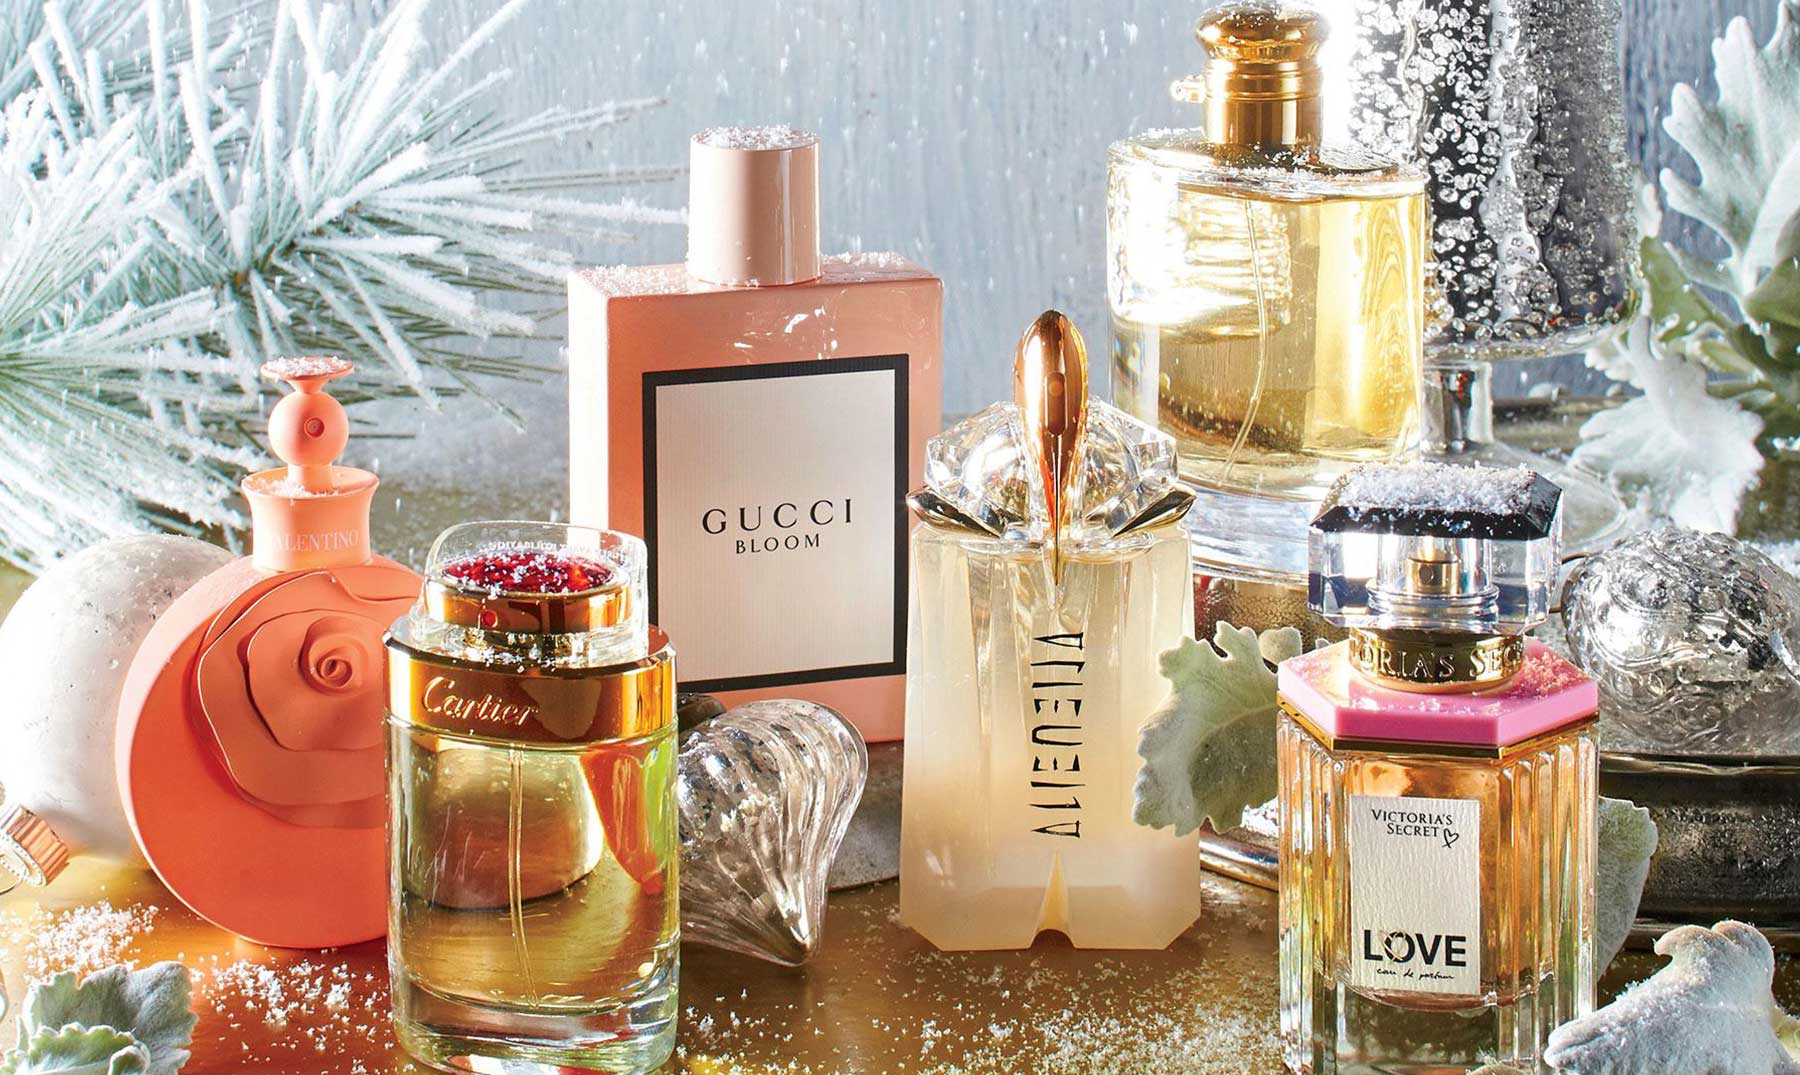 Comprar originales vender | Iniciar un negocio de perfumes